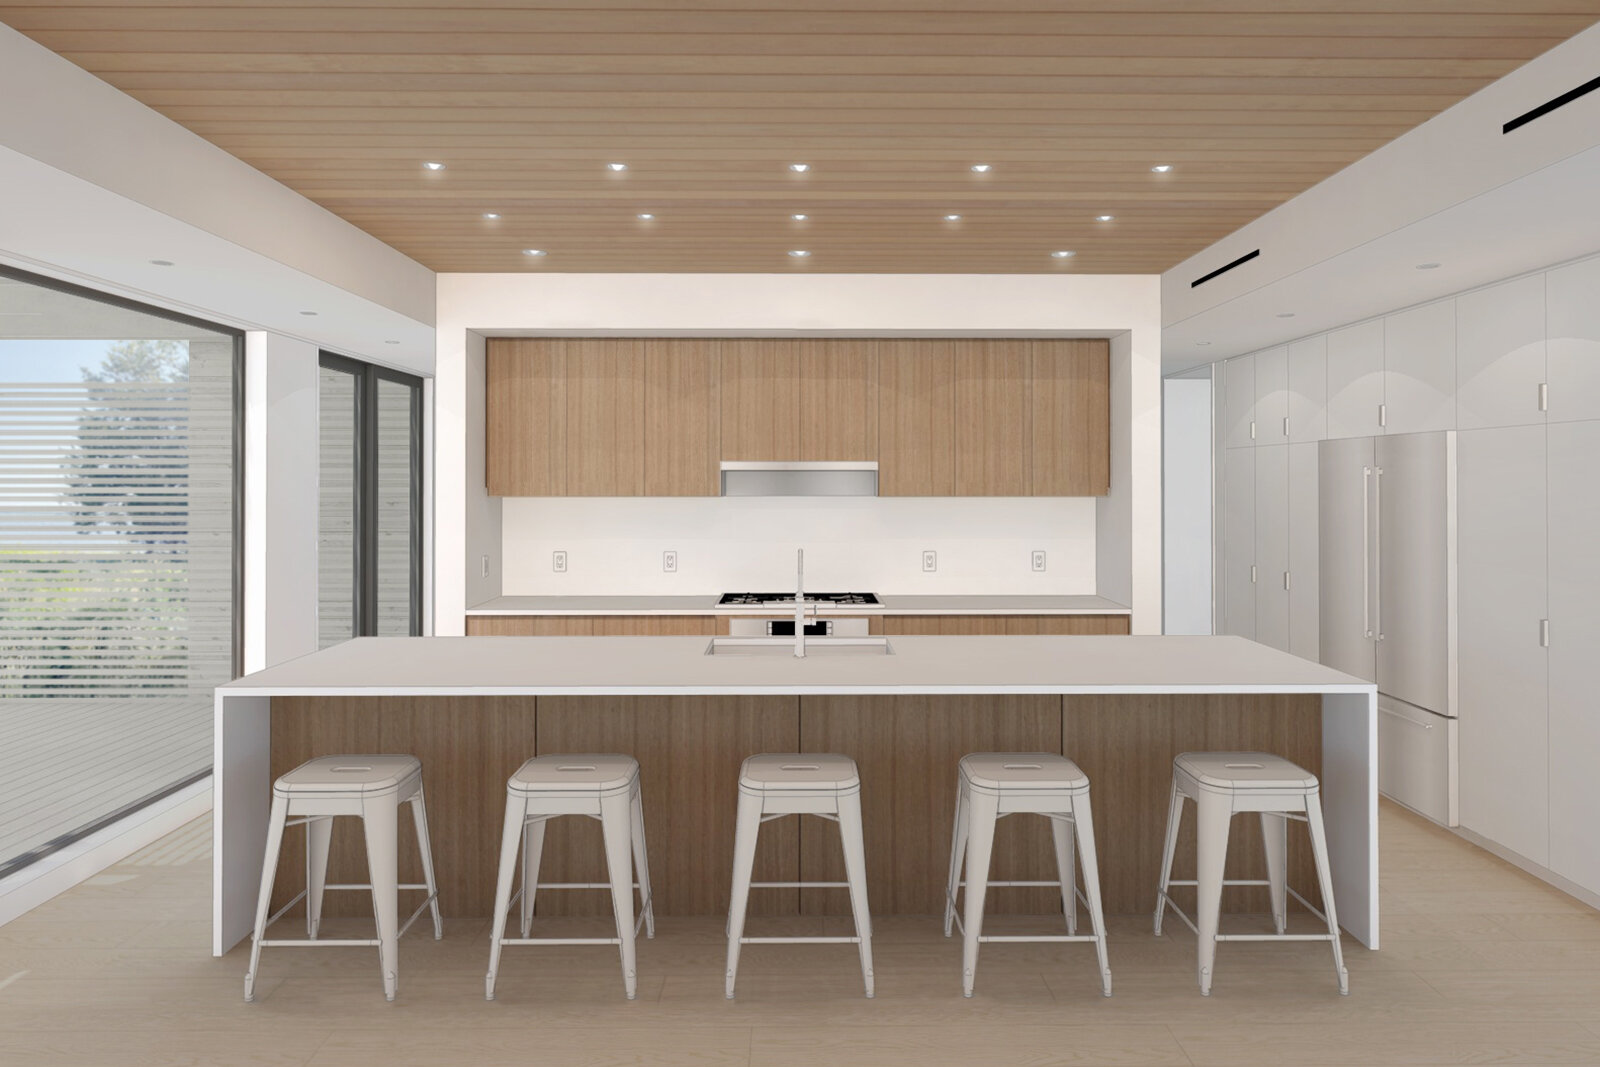 res4-resolution-4-architecture-modern-modular-prefab-Riverhead-House-Rendering-03-Interior-Kitchen.jpg